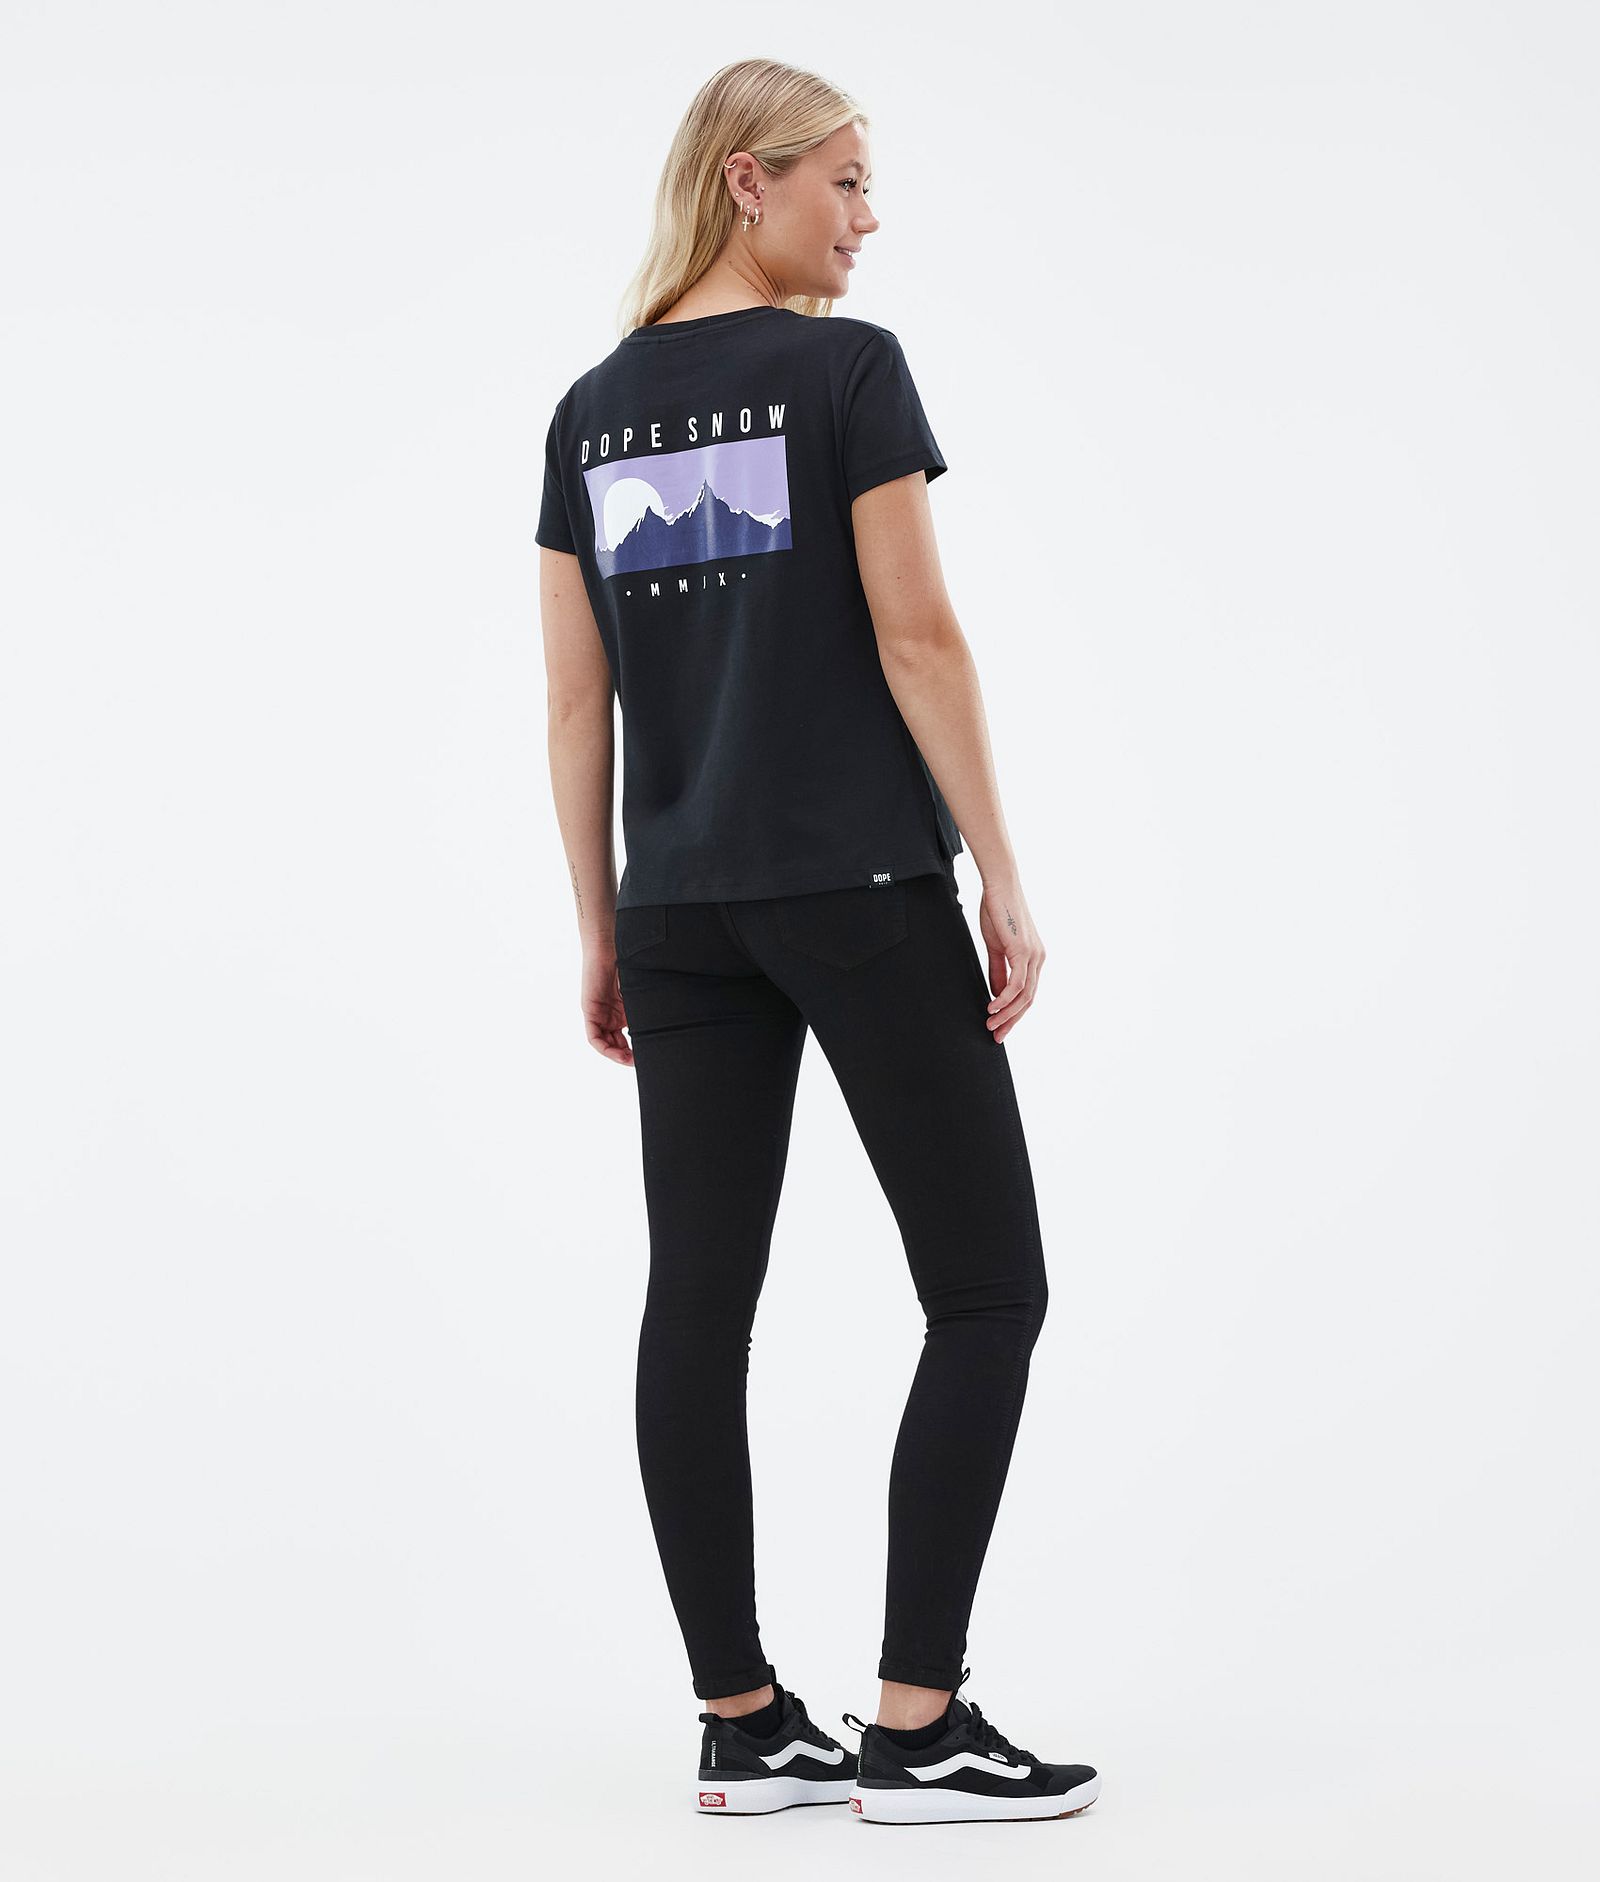 Dope Standard W T-shirt Kobiety Silhouette Black